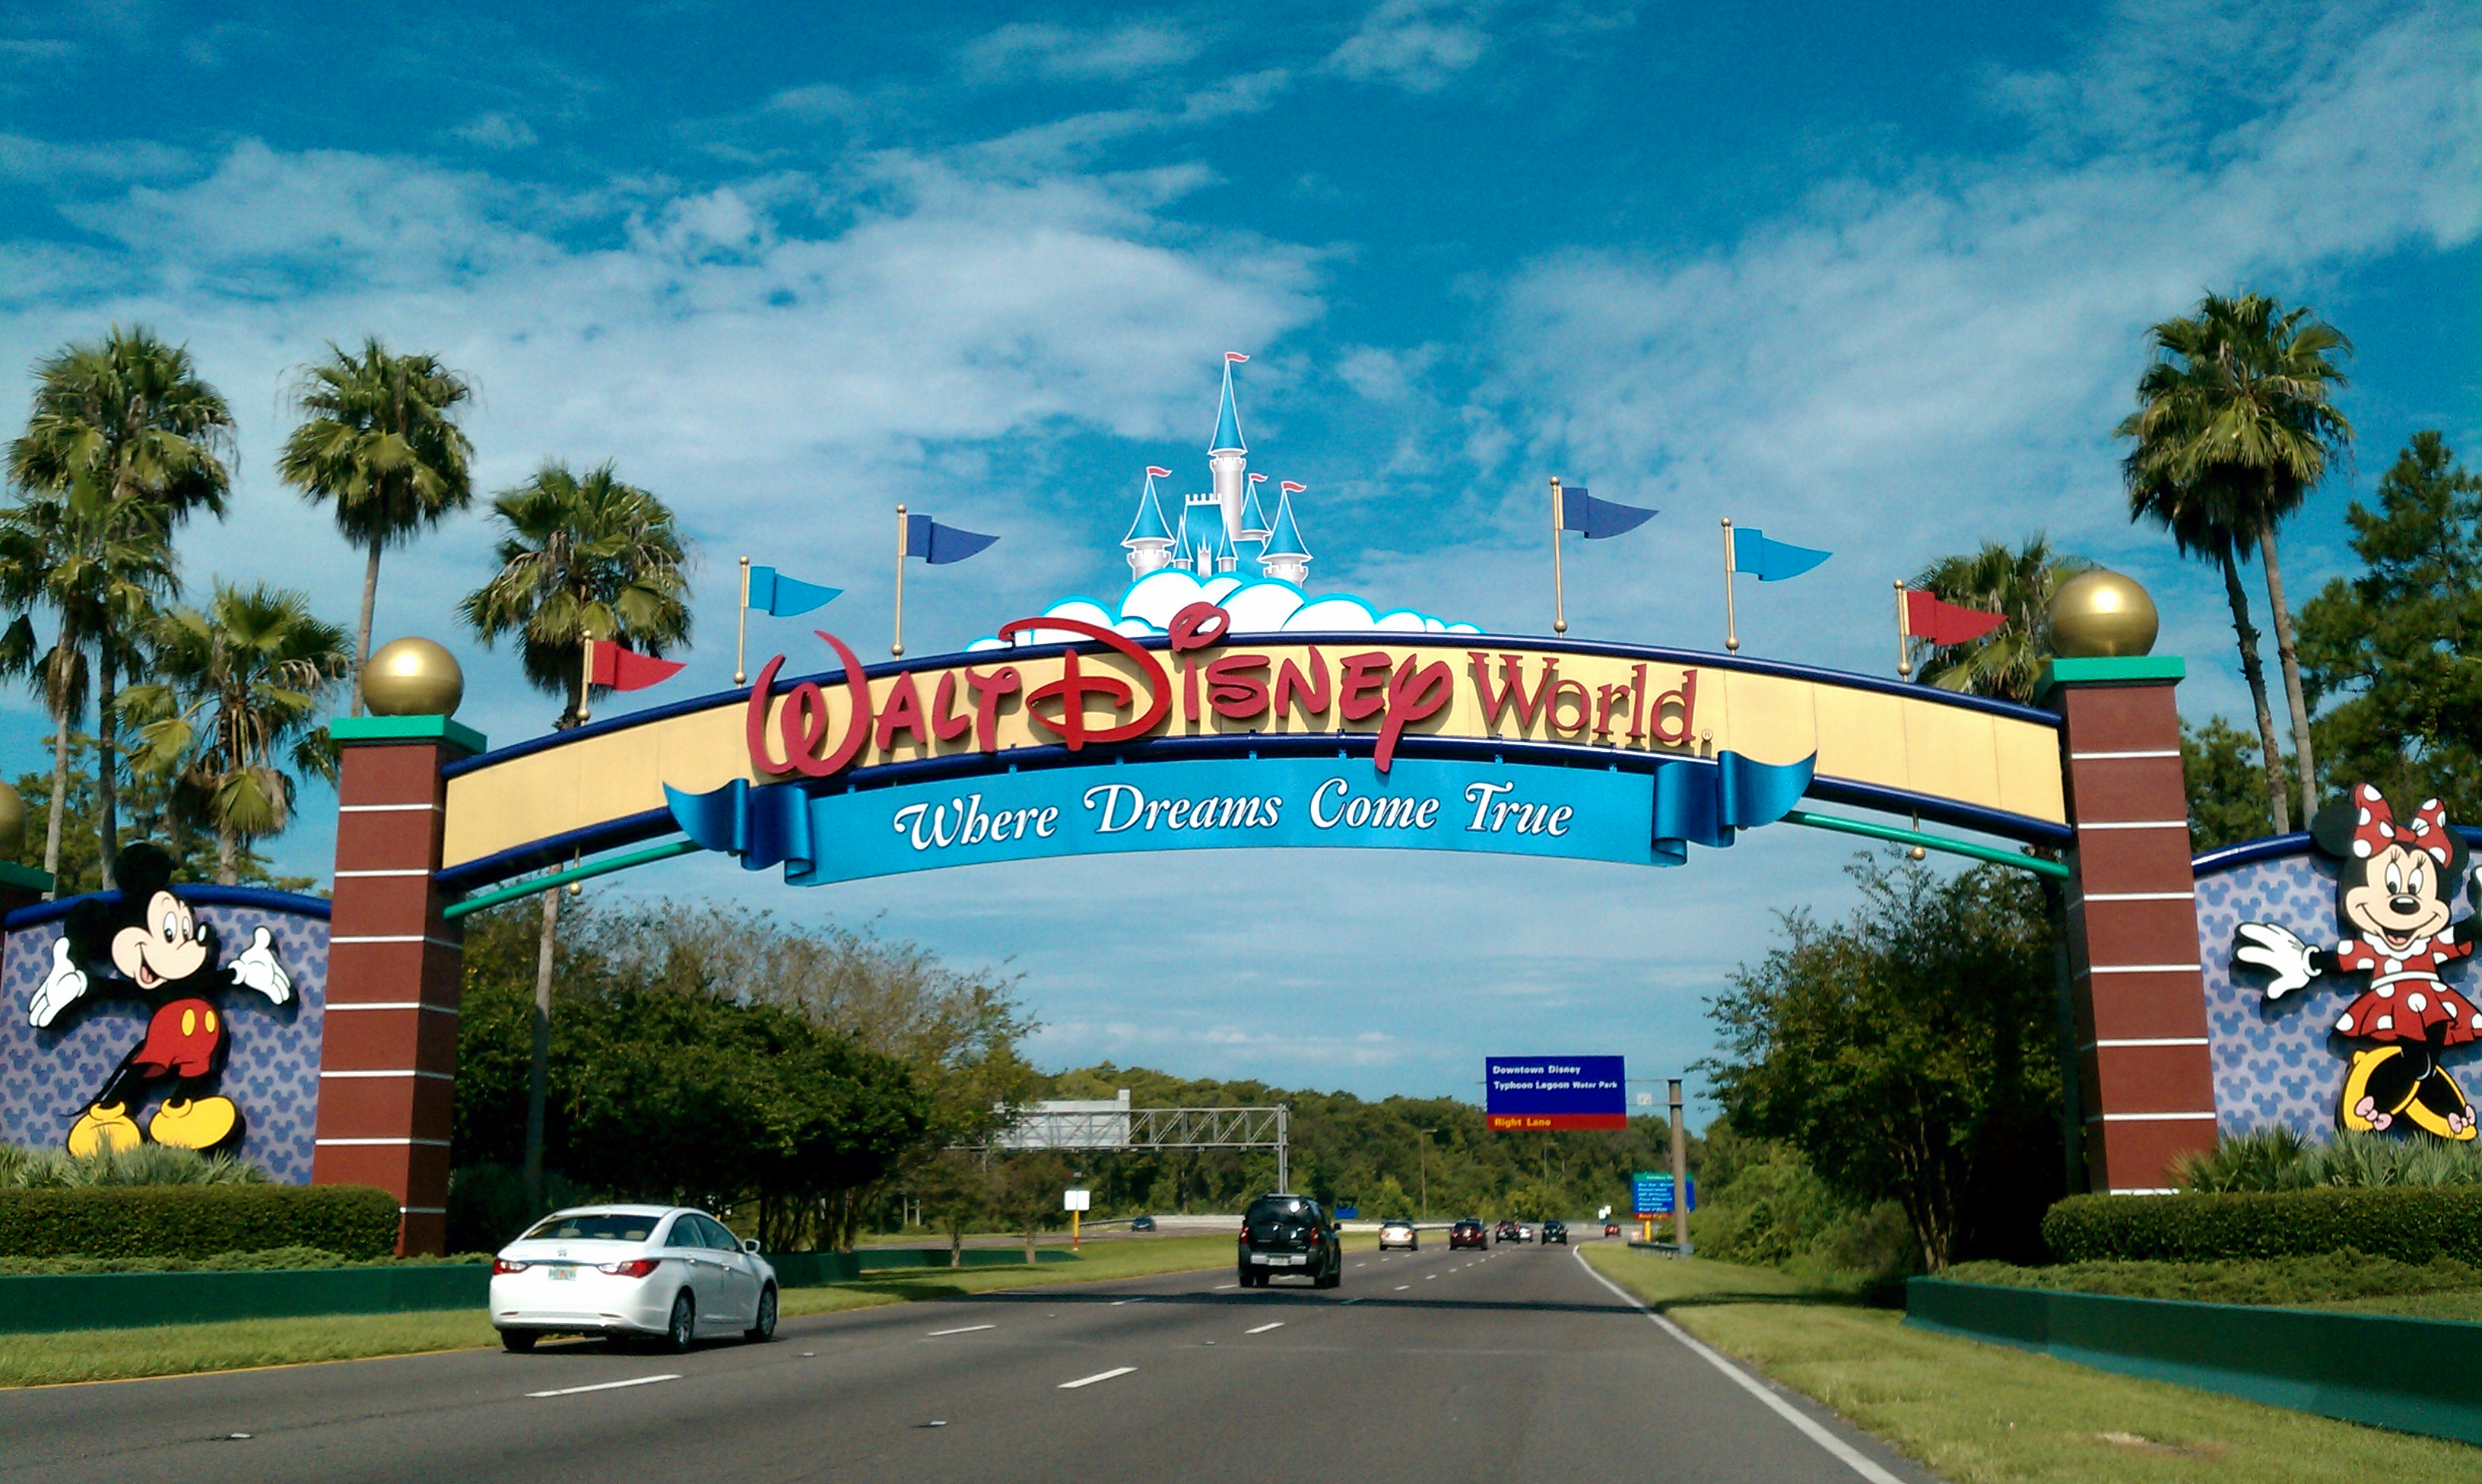 Walt Disney World reabrió sus cuatro parques temáticos